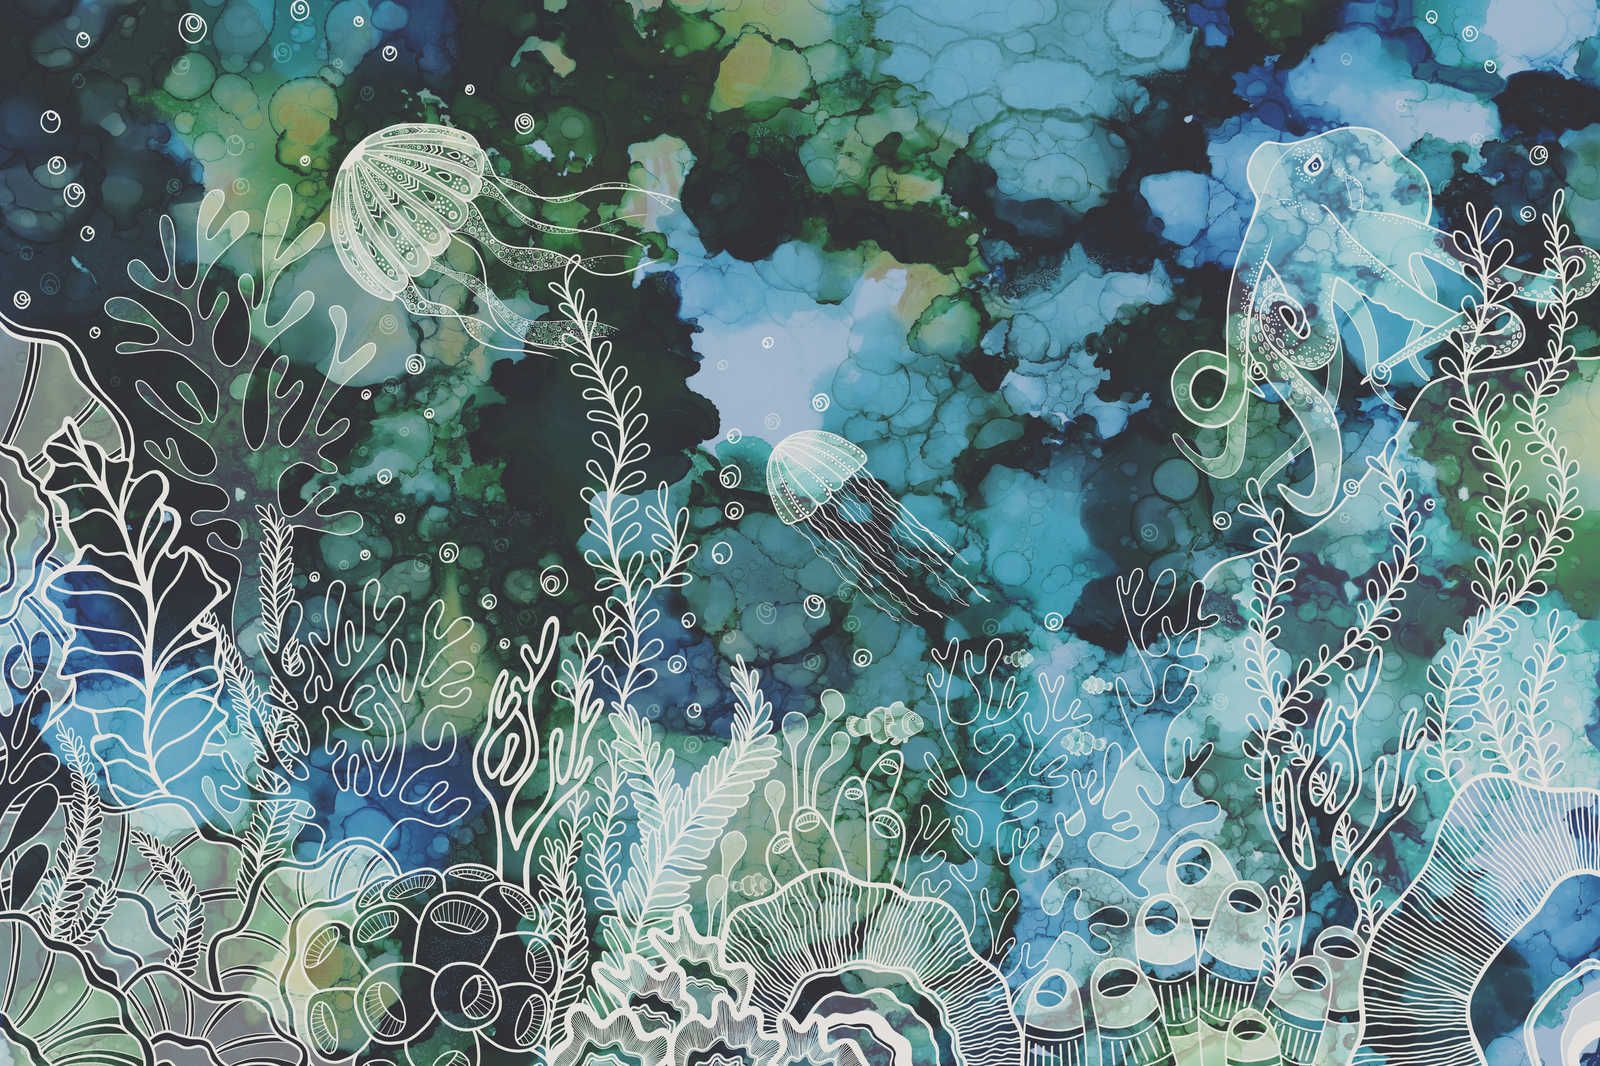             Leinwandbild mit Unterwasser Korallenriff in Acryl Farben – 1,20 m x 0,80 m
        